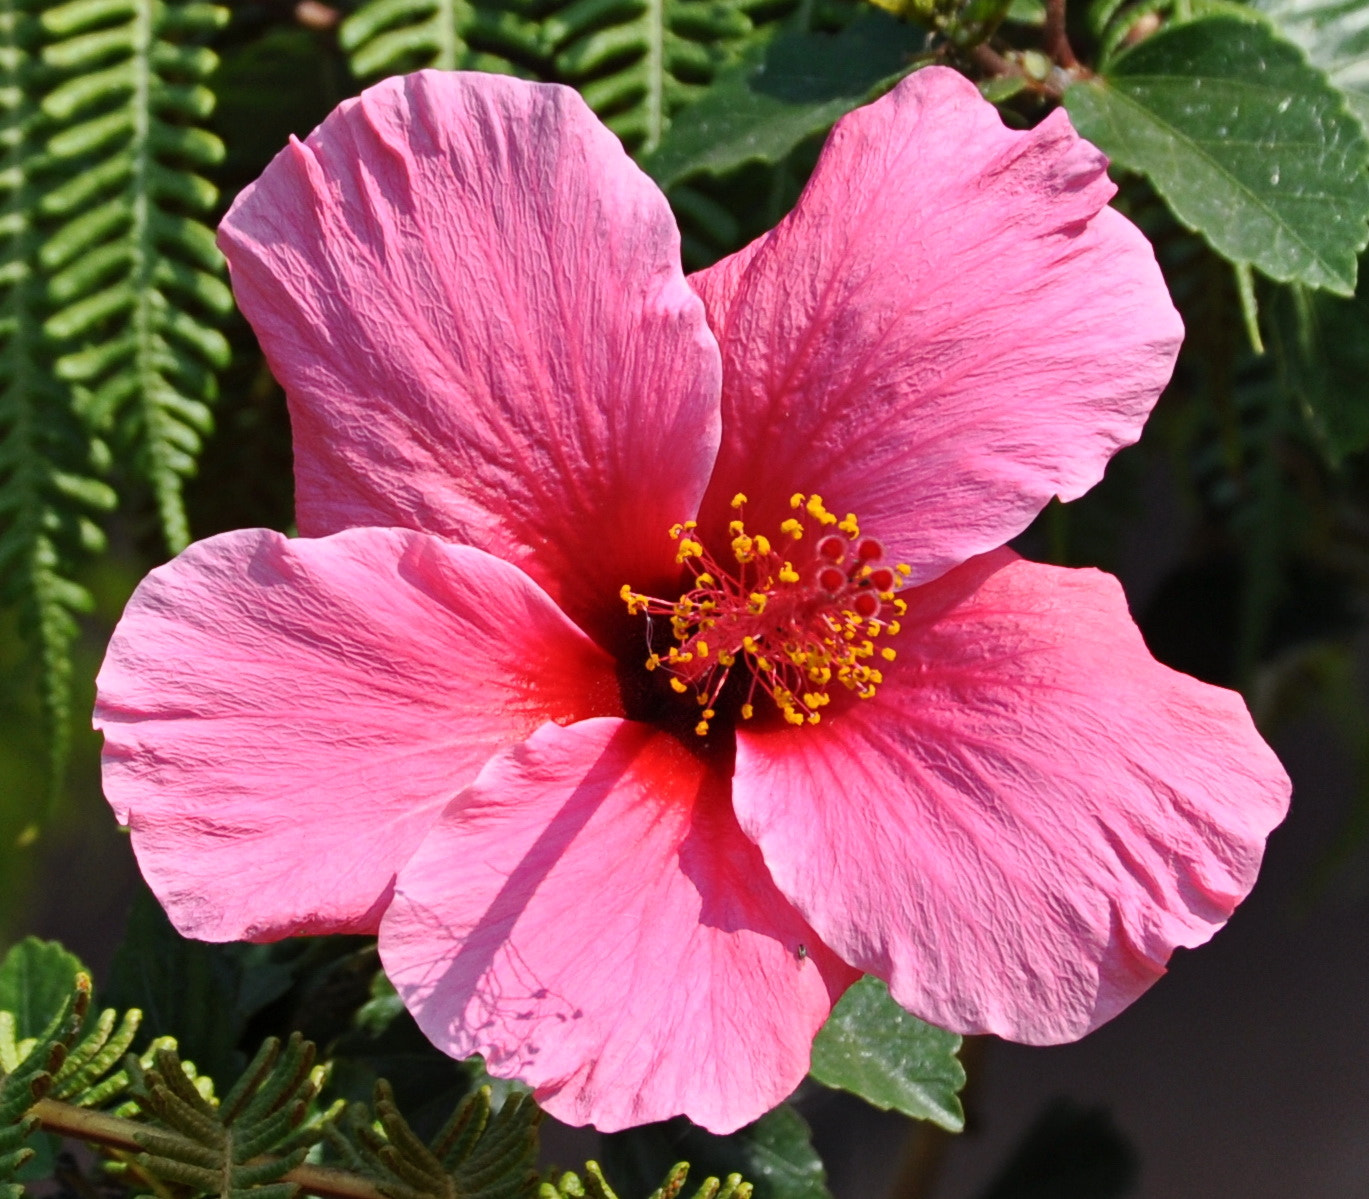 Nikon D90 + Nikon AF-S DX Nikkor 18-140mm F3.5-5.6G ED VR sample photo. Light pink hibiscus flower photography